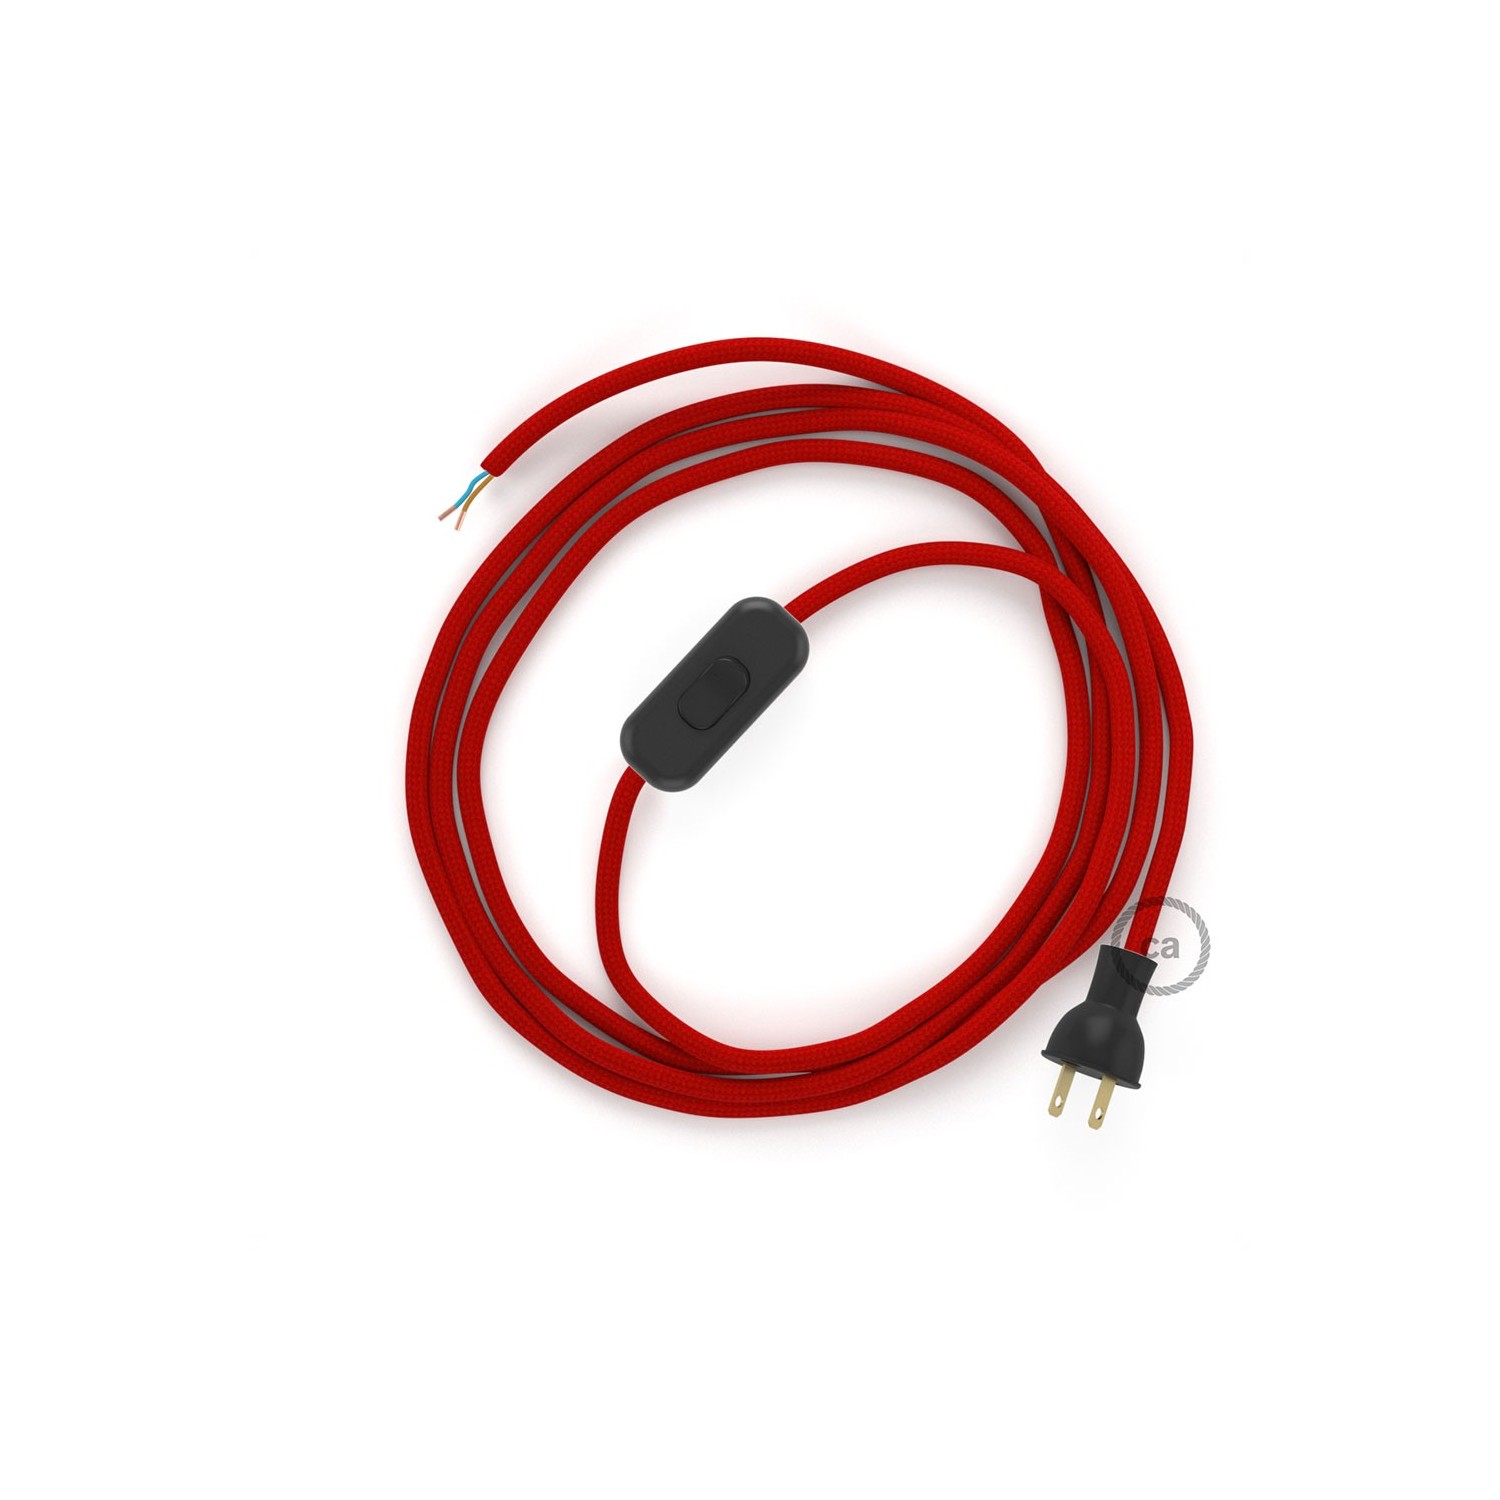 Cableado para lámpara de mesa, cable RM09 Rayón Rojo 1,8 m. Elige el color de la clavija y del interruptor!